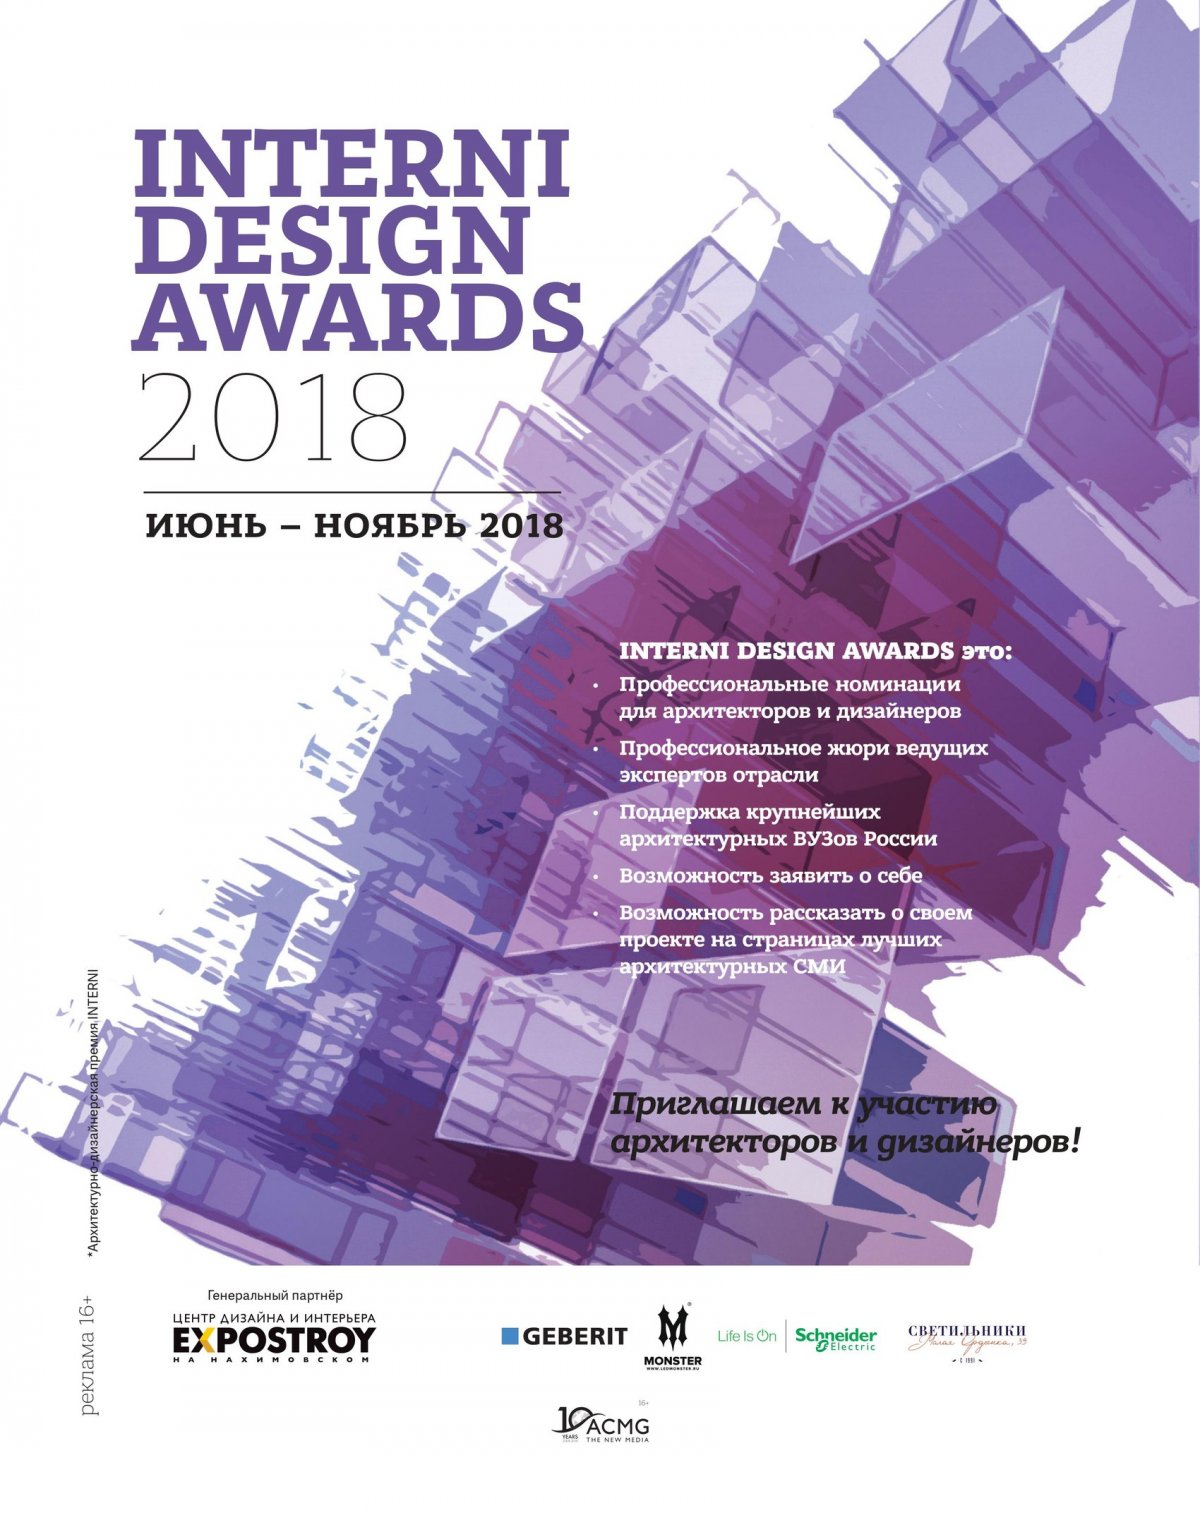 Открыт прием заявок на участие в ежегодной архитектурно-дизайнерской премии INTERNI DESIGN AWARDS 2018.